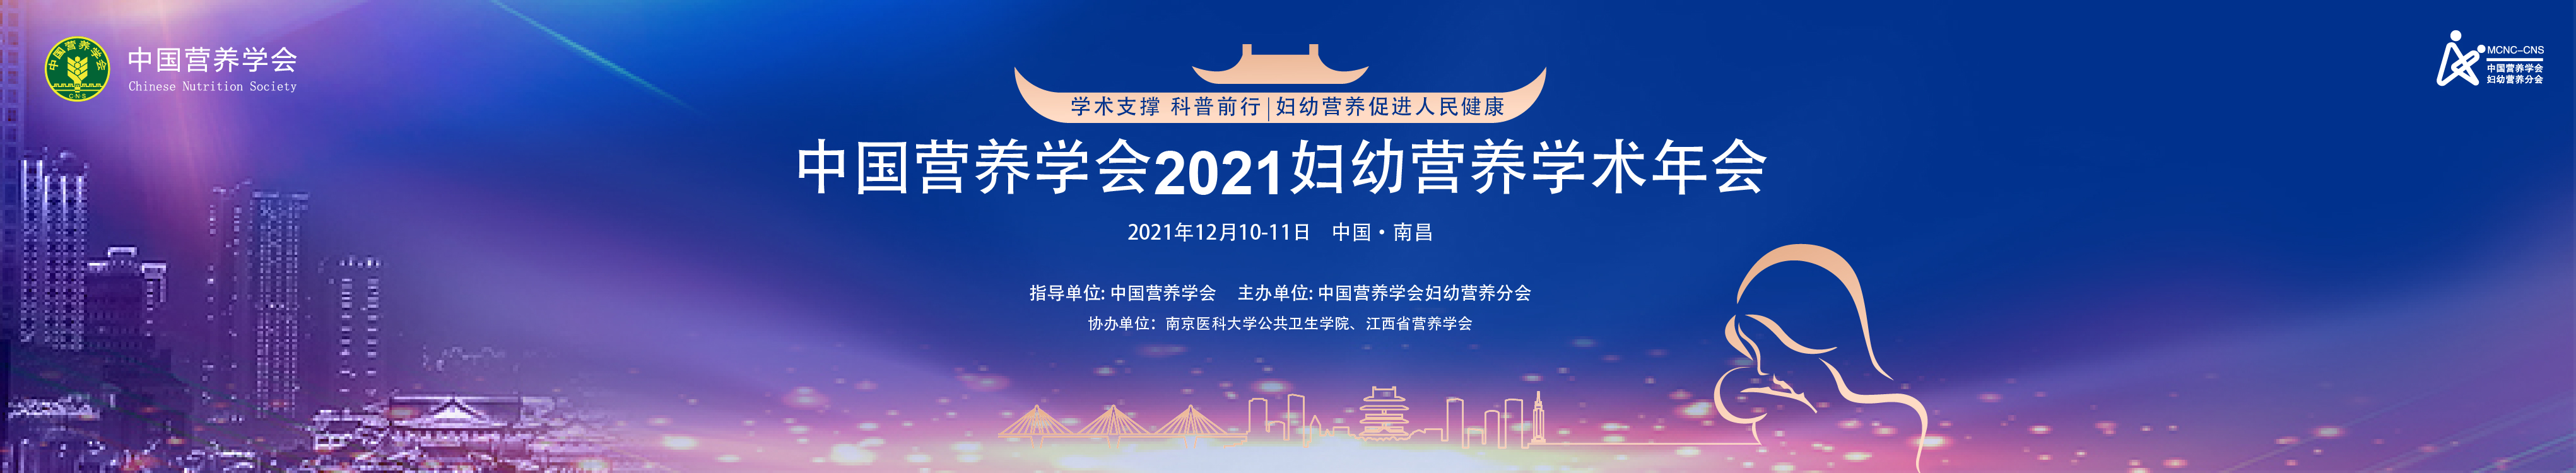 中国营养学会2021妇幼营养学术年会